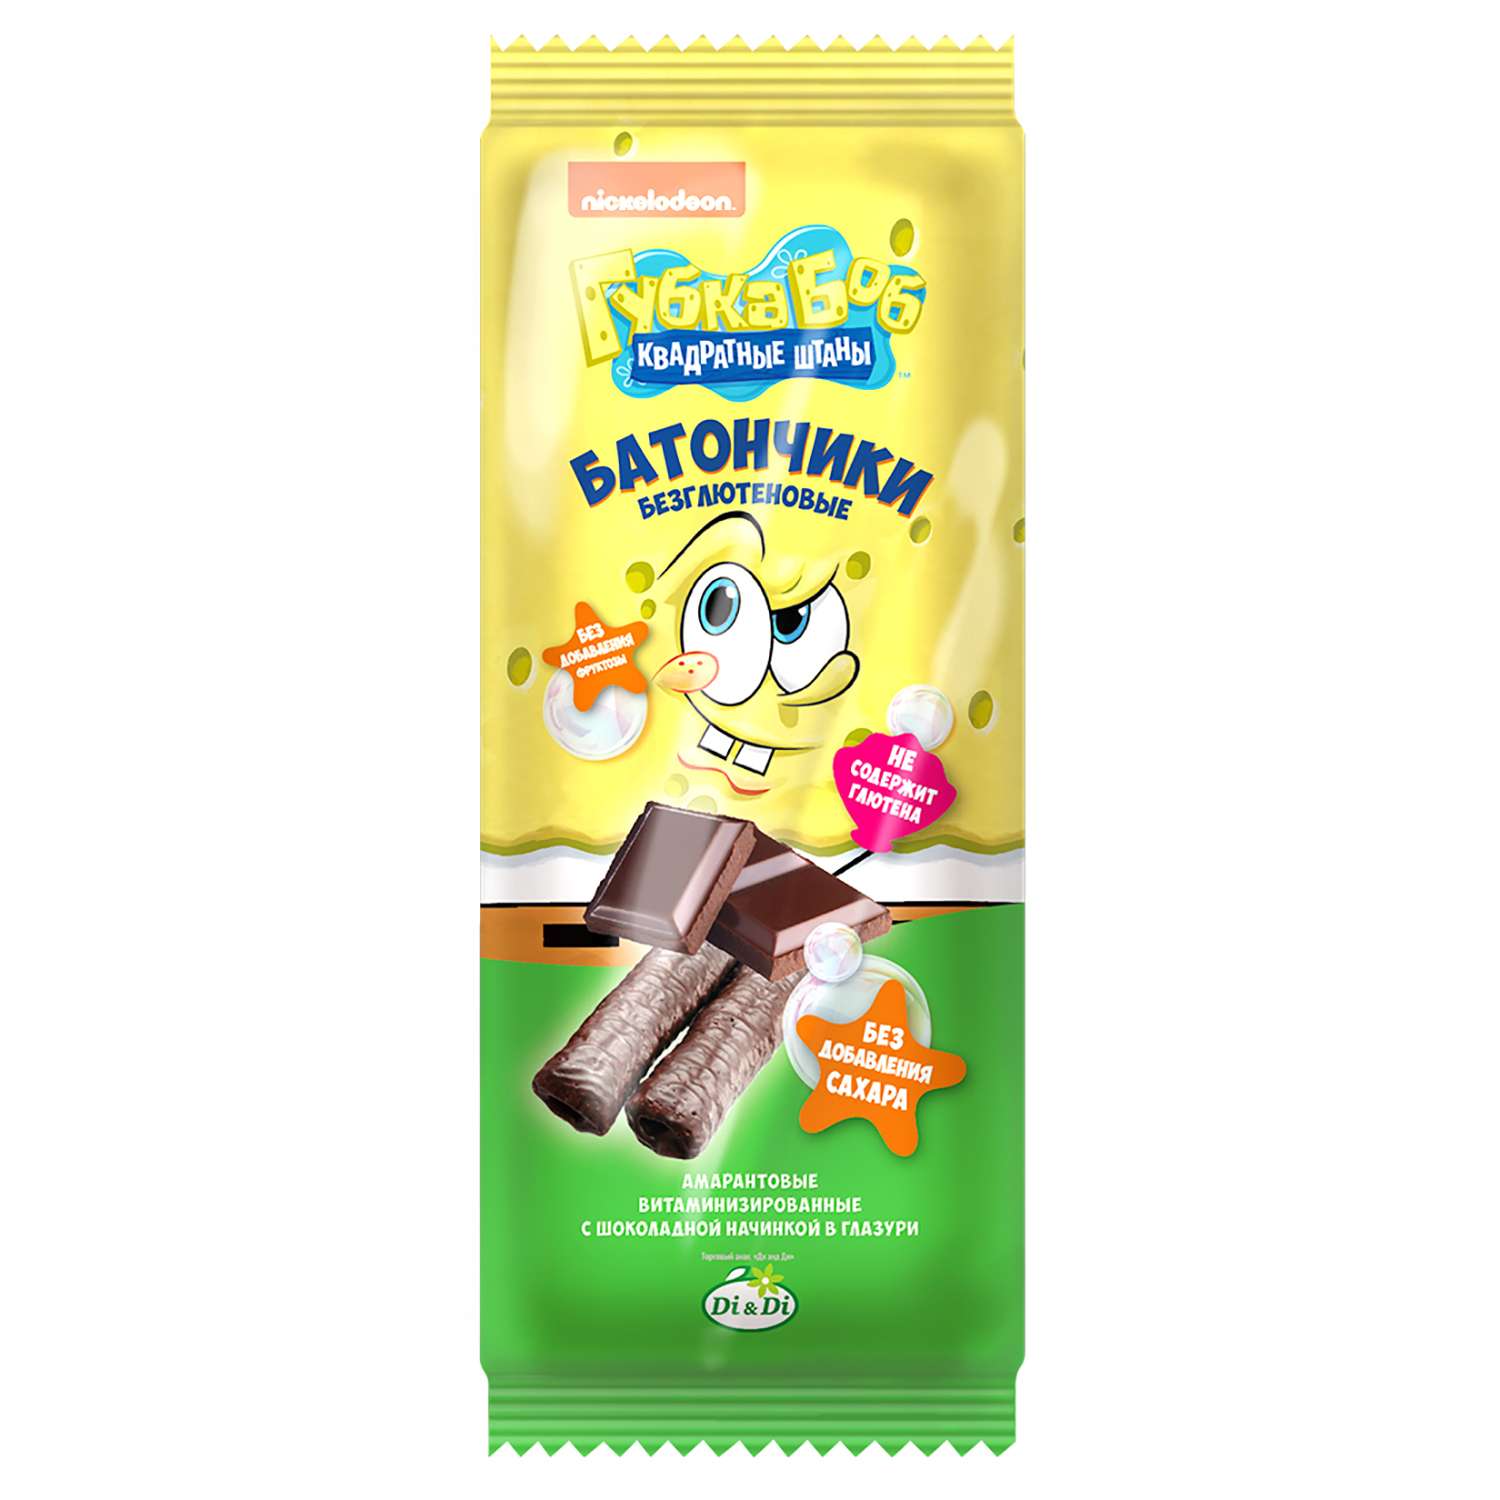 Батончики Sponge Bob амарантовые с шоколадной начинкой глазированные 20г - фото 1